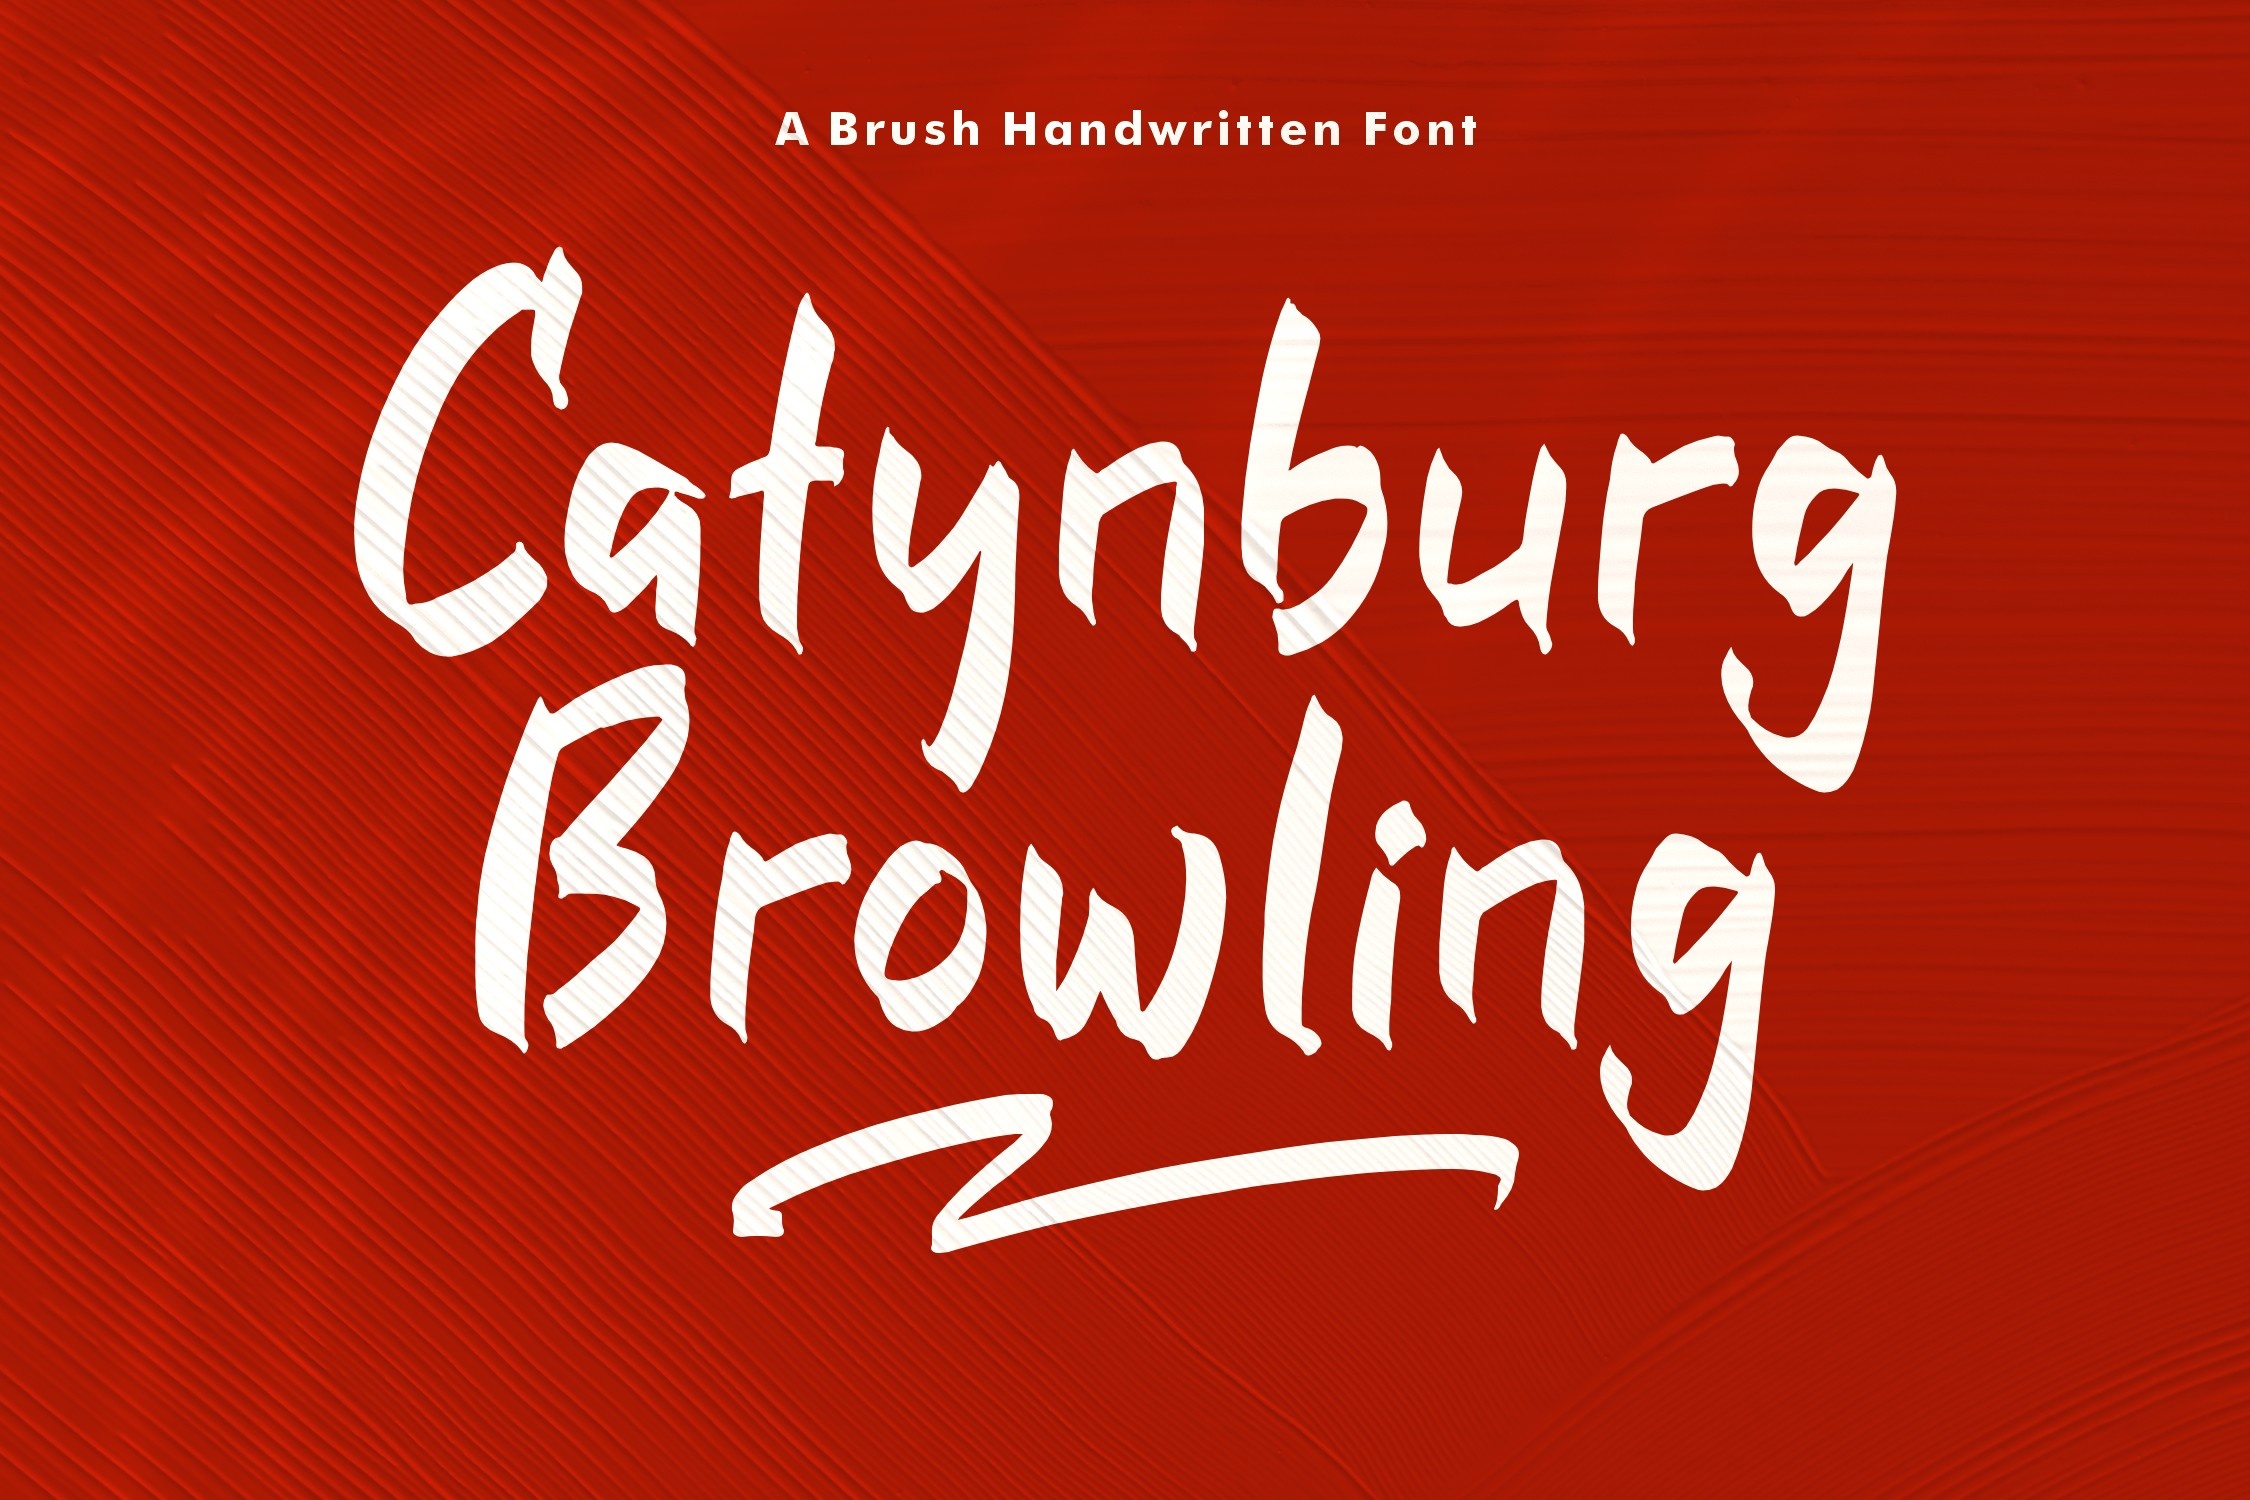 Ejemplo de fuente Catynburg Browling